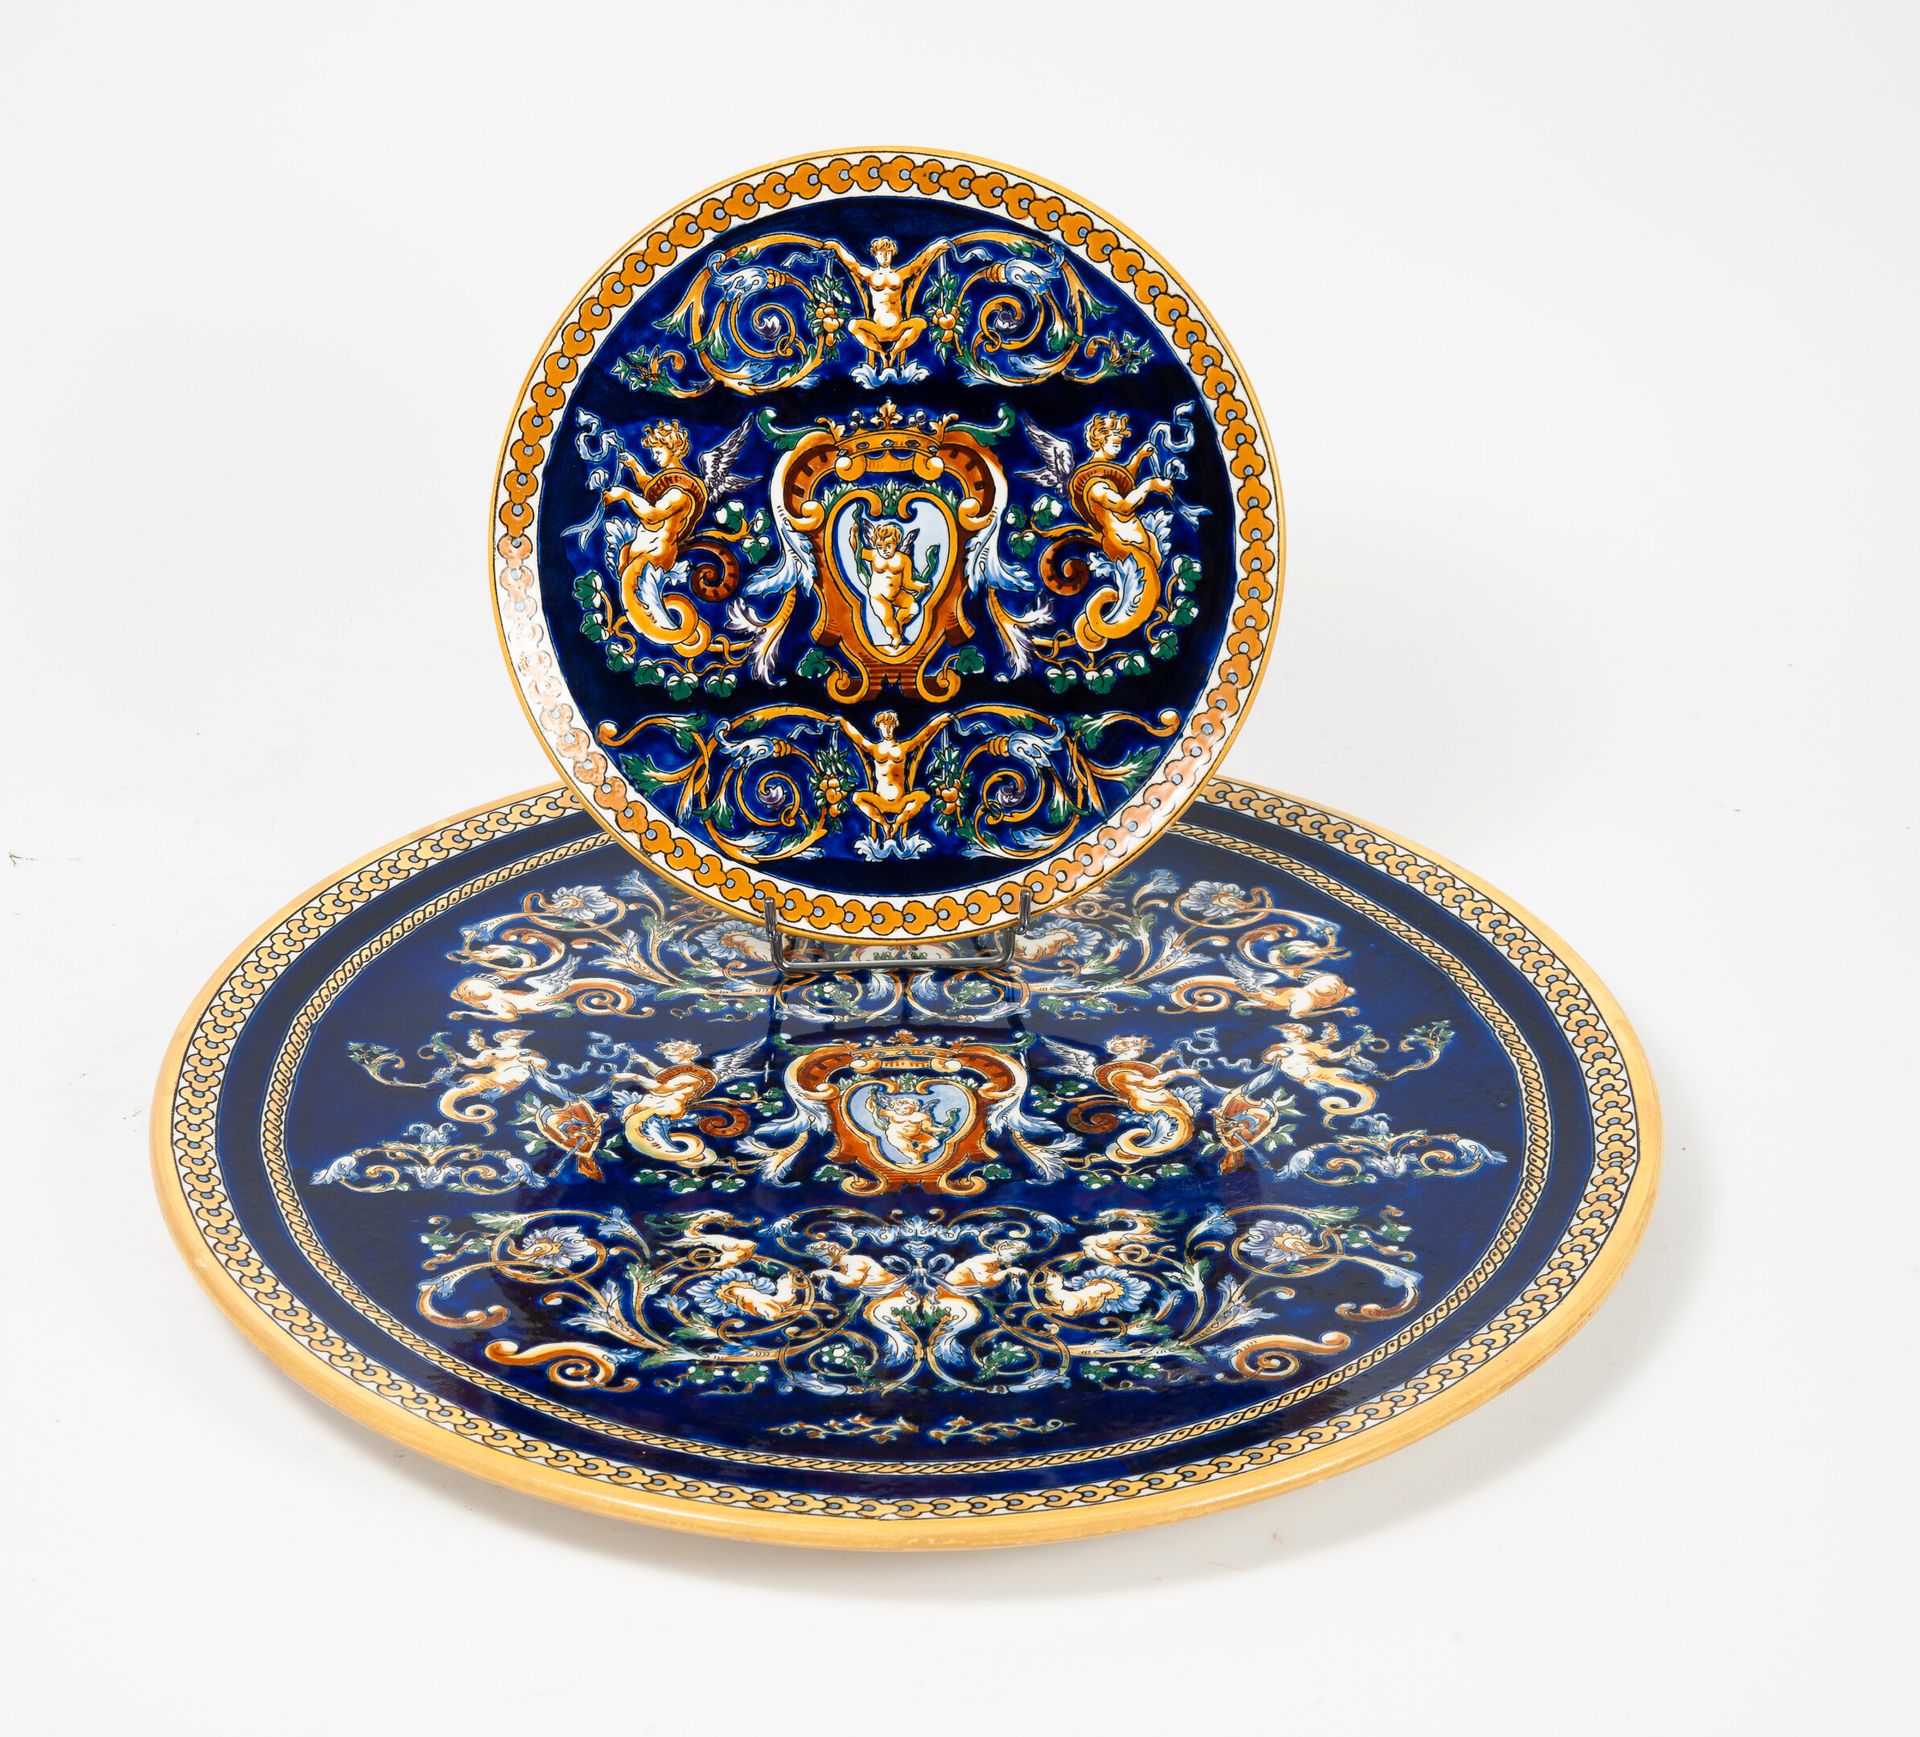 GIEN 两个圆形的陶器，在蓝色的背景上装饰着怪兽，中心是以侯爵的王冠为顶的图样。

直径：25.5和46厘米。

小的划痕和磨损。